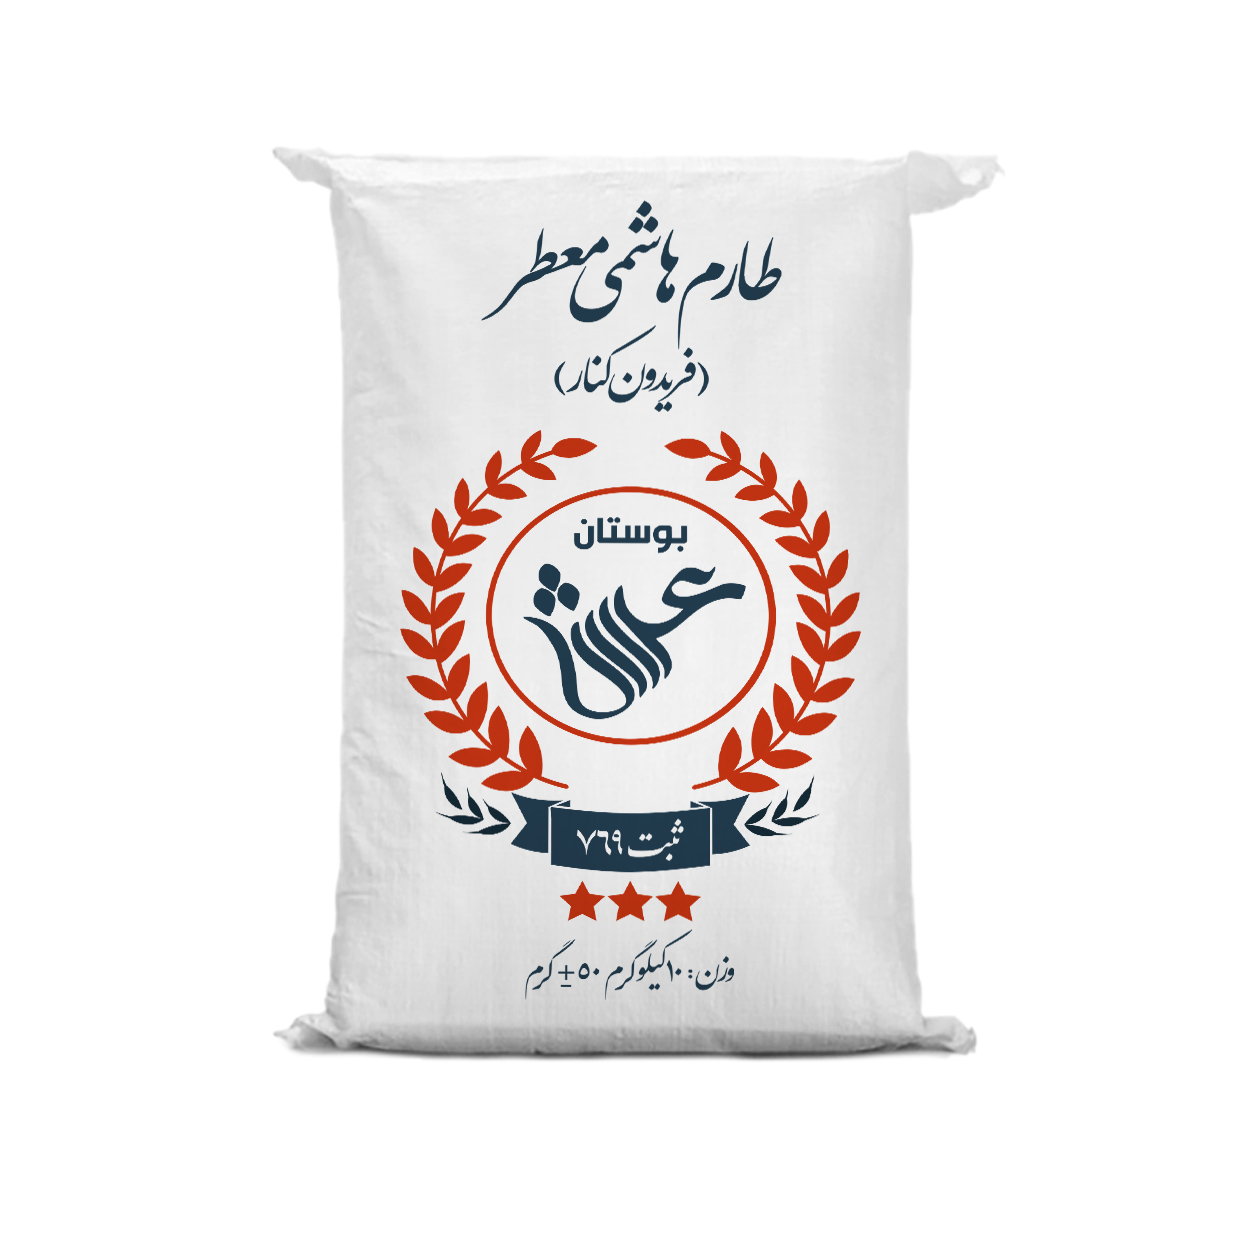 نکته خرید - قیمت روز برنج ایرانی طارم هاشمی فریدونکنار بوستان عرش - 10 کیلوگرم خرید